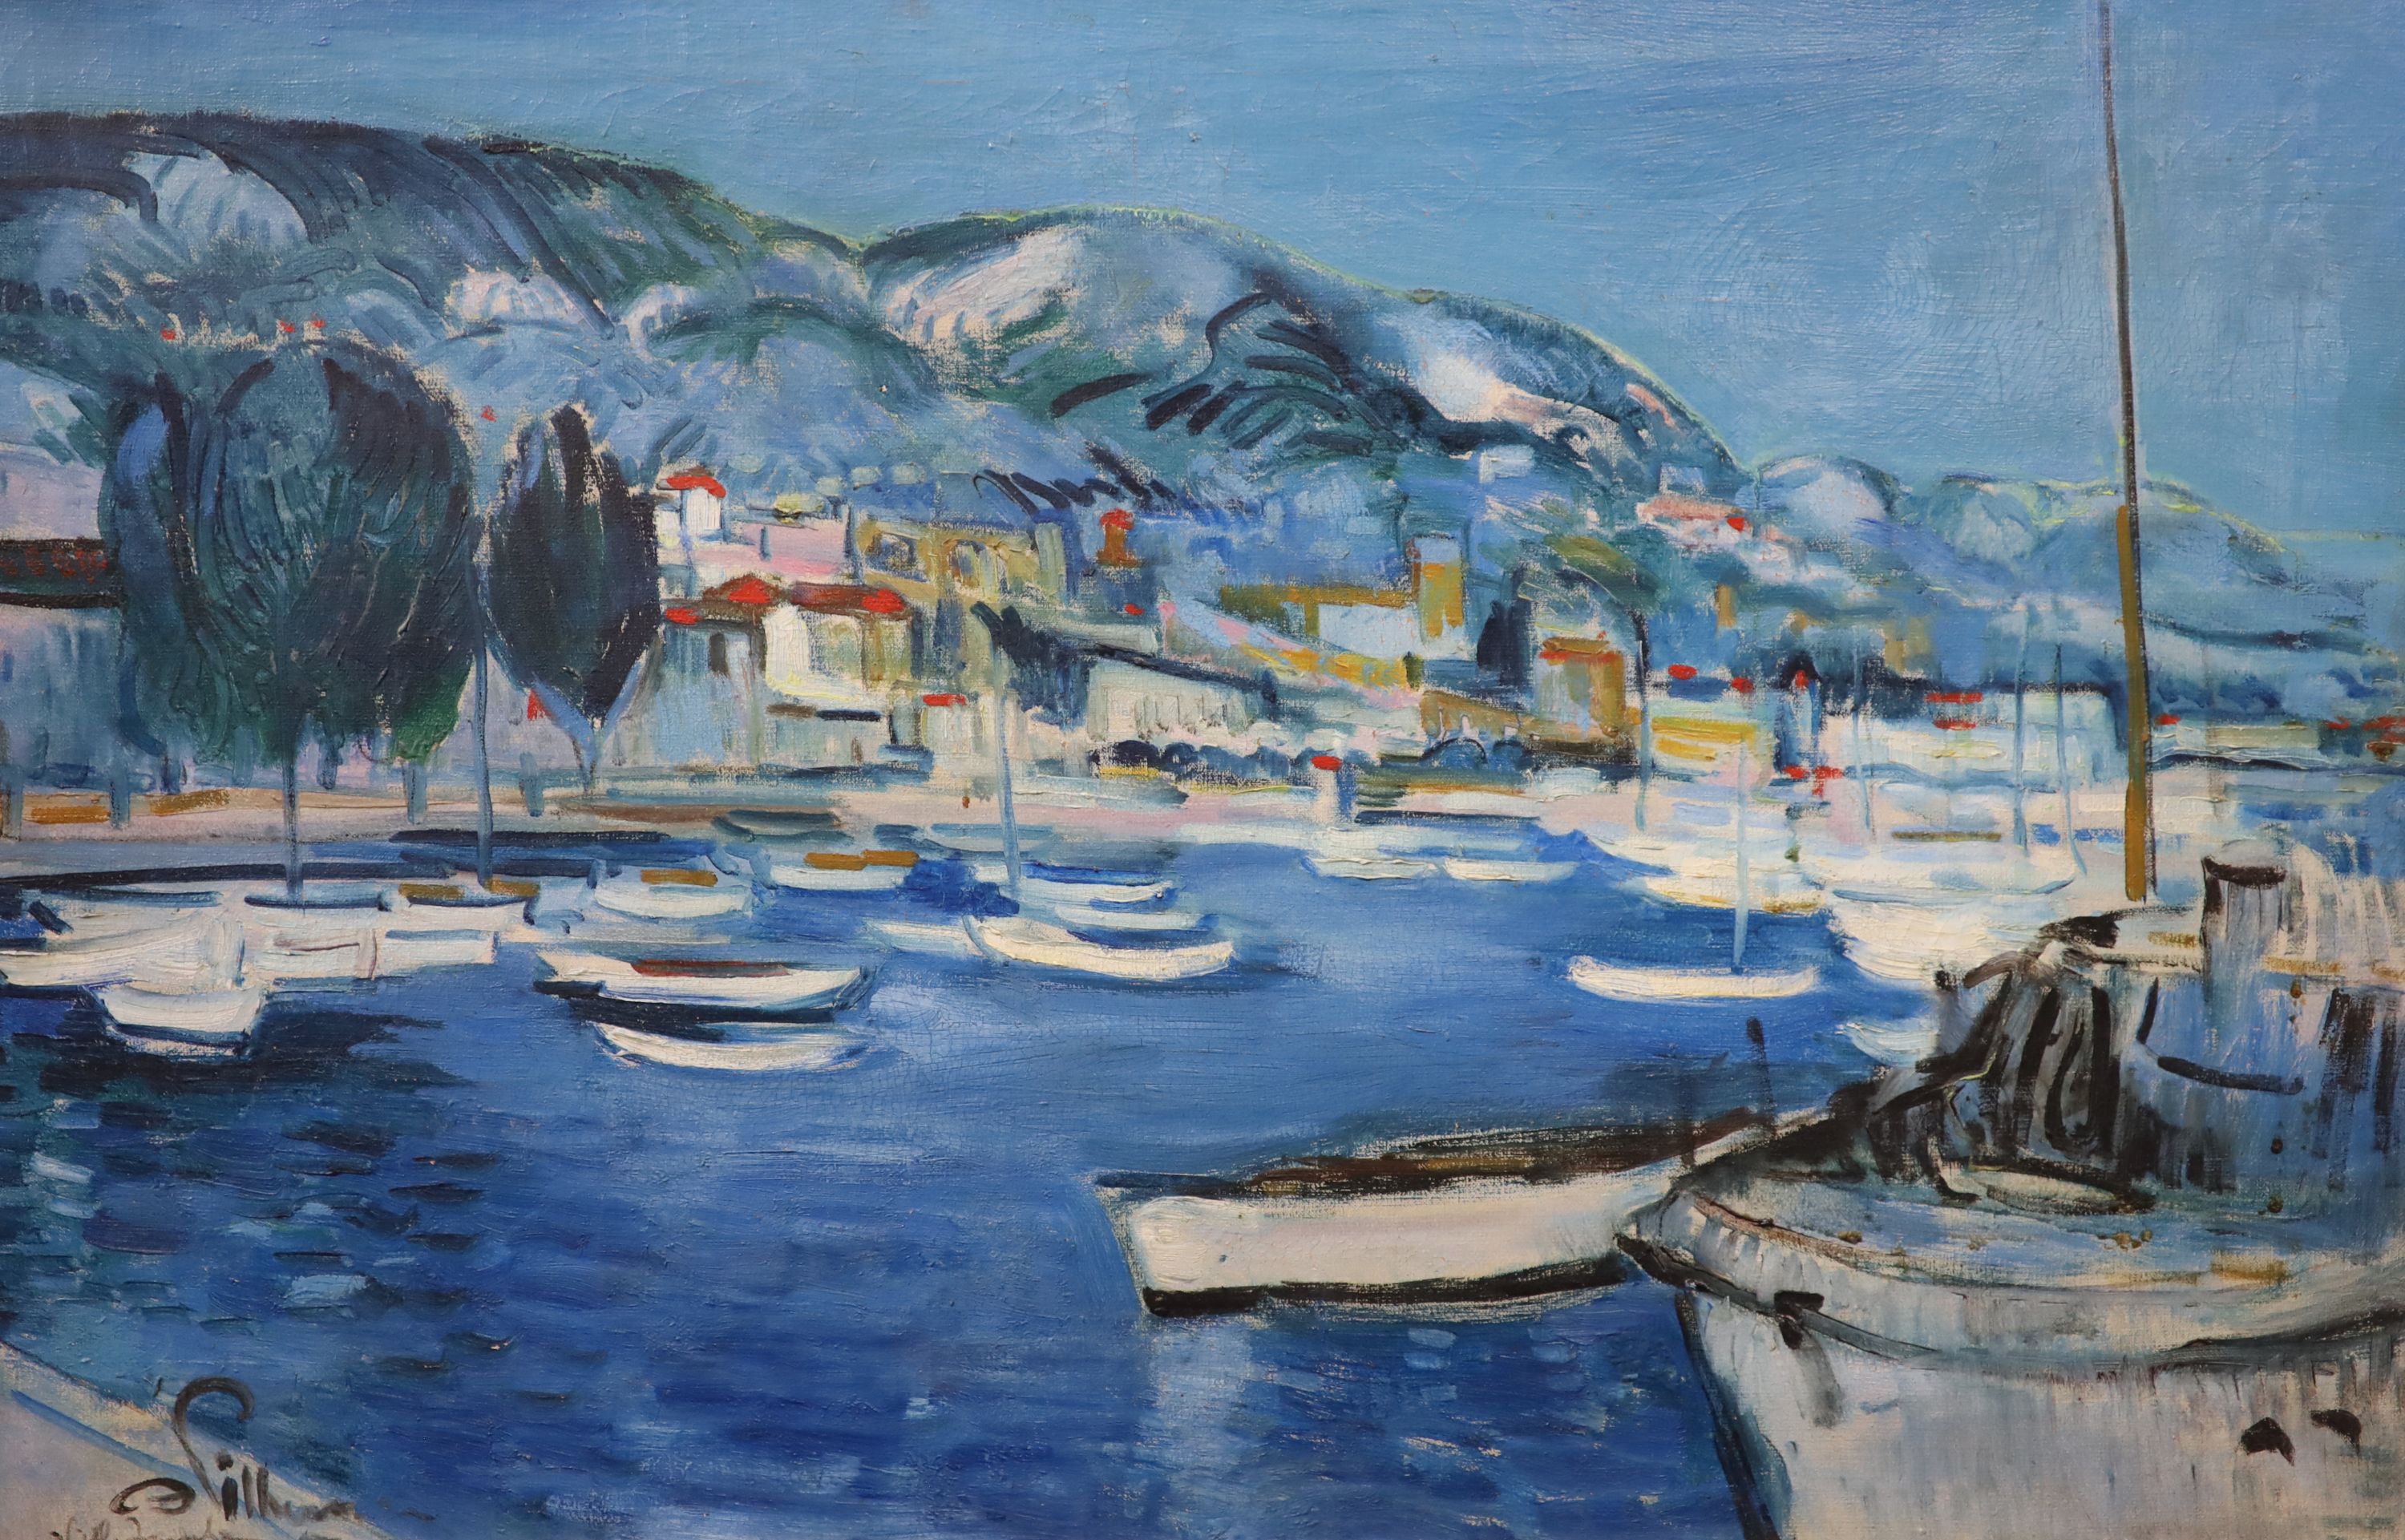 E Pilleau, The Harbour, Villefranche, Oil on canvas, 50 x 76cm.